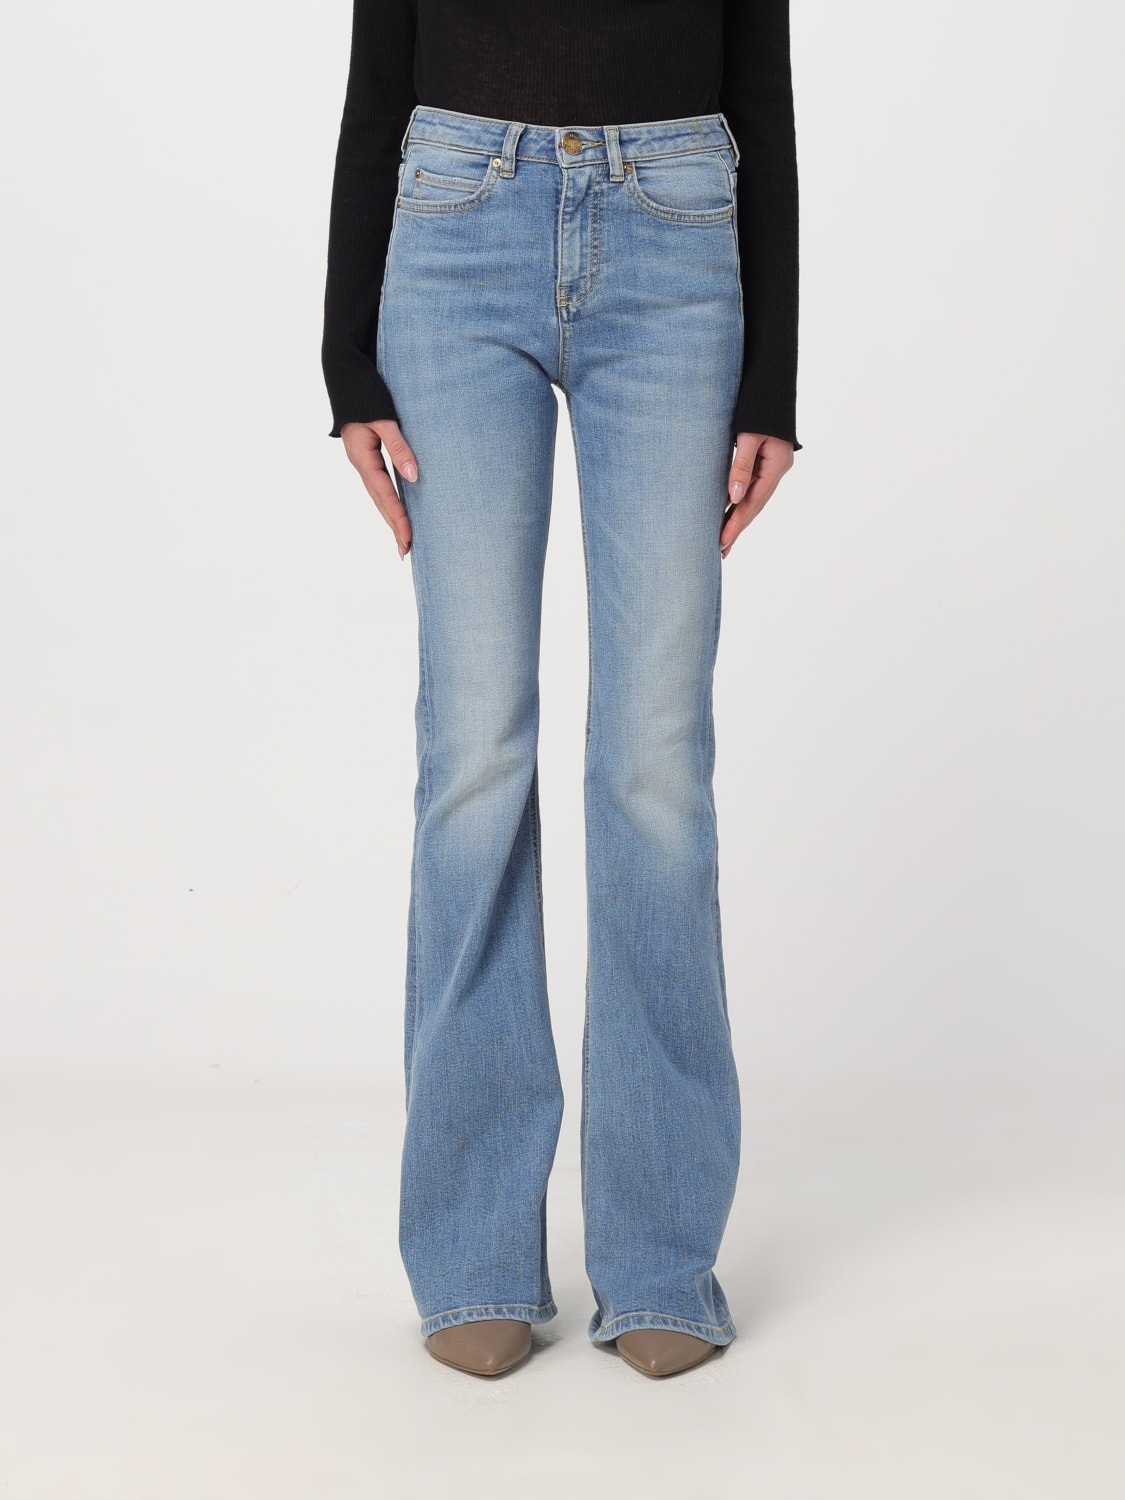 Jeans woman Pinko - 1